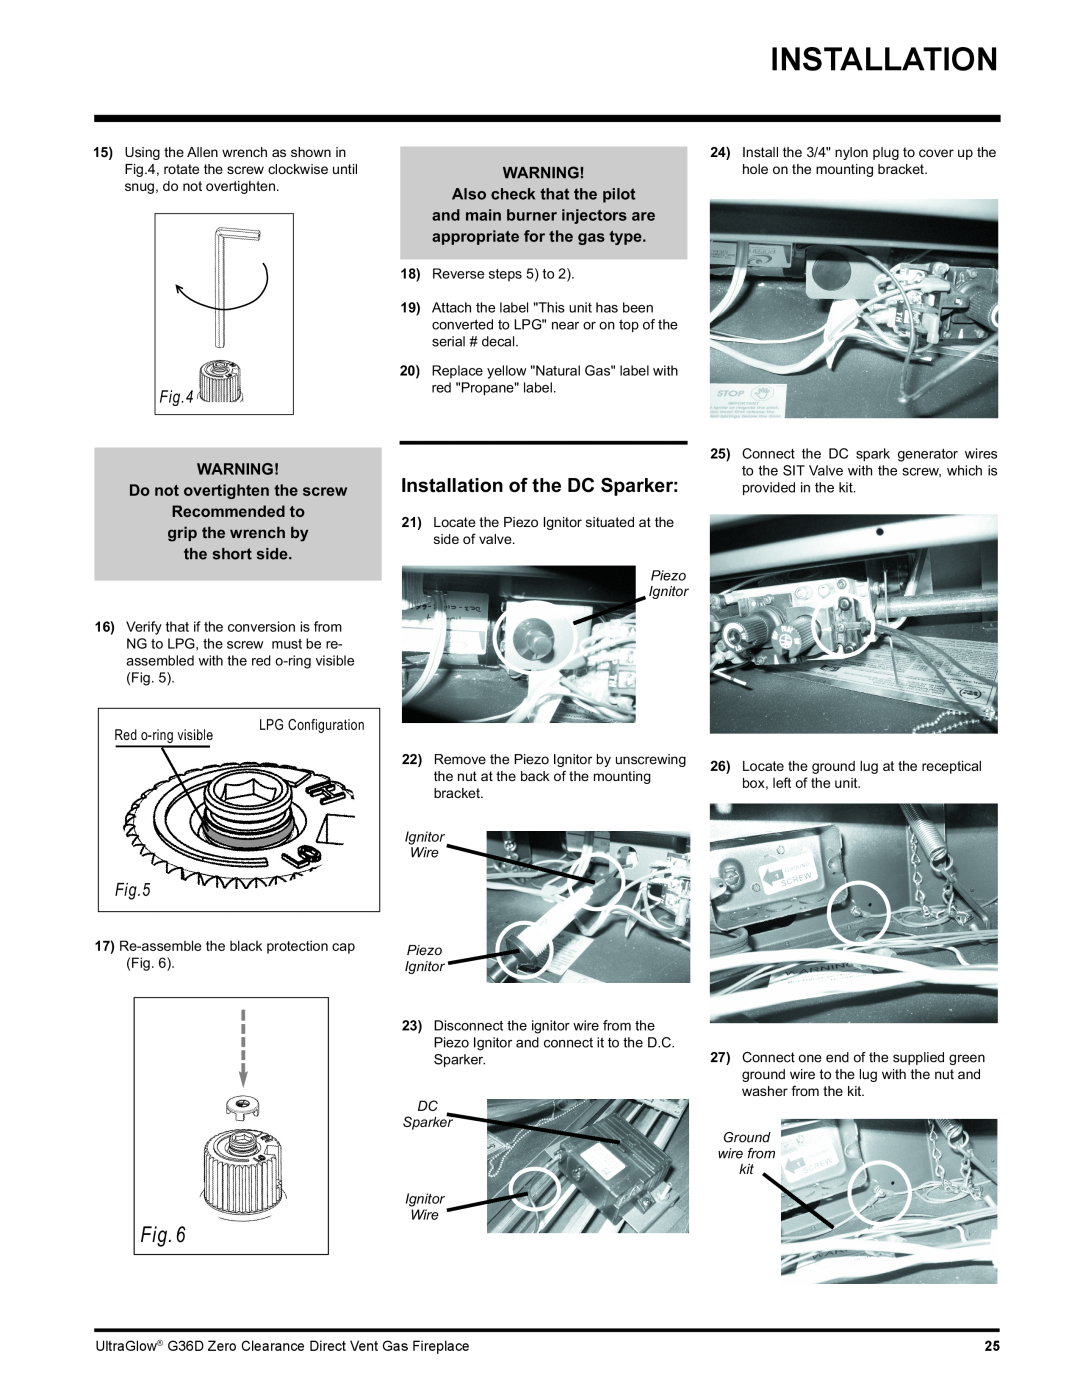 Regency G36D installation manual Installation of the DC Sparker 